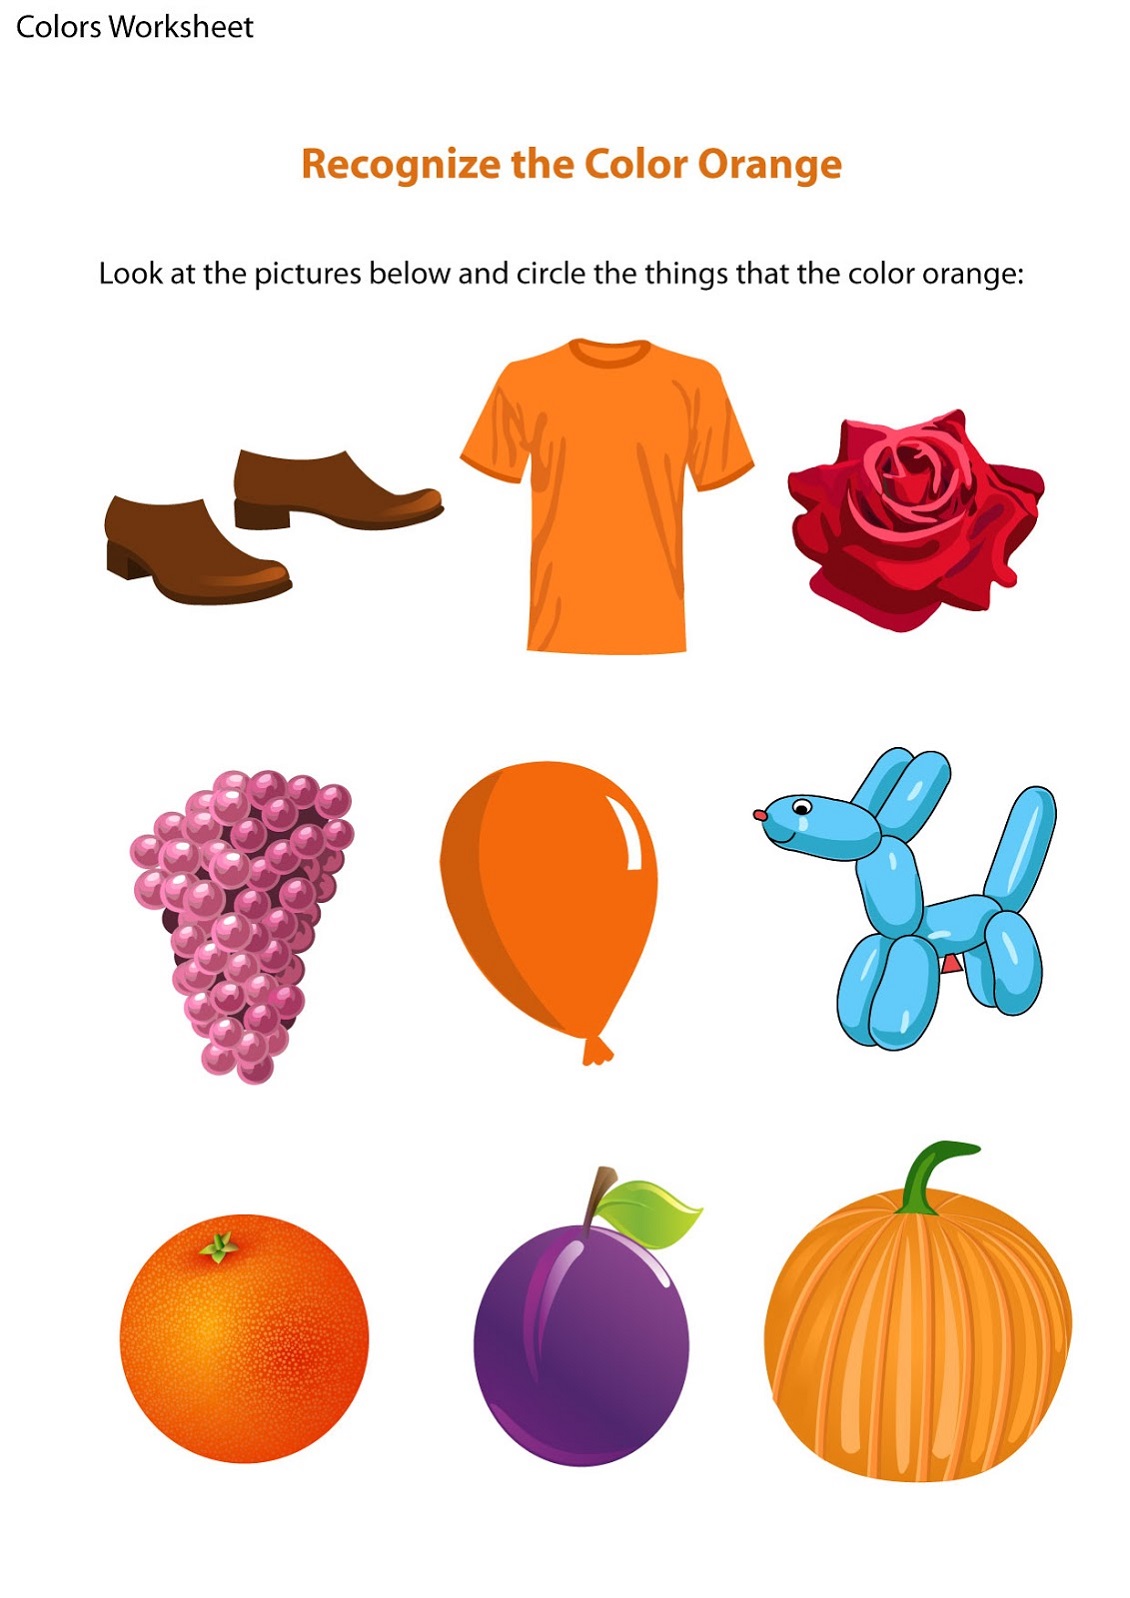 Colors Worksheet Esl Pages